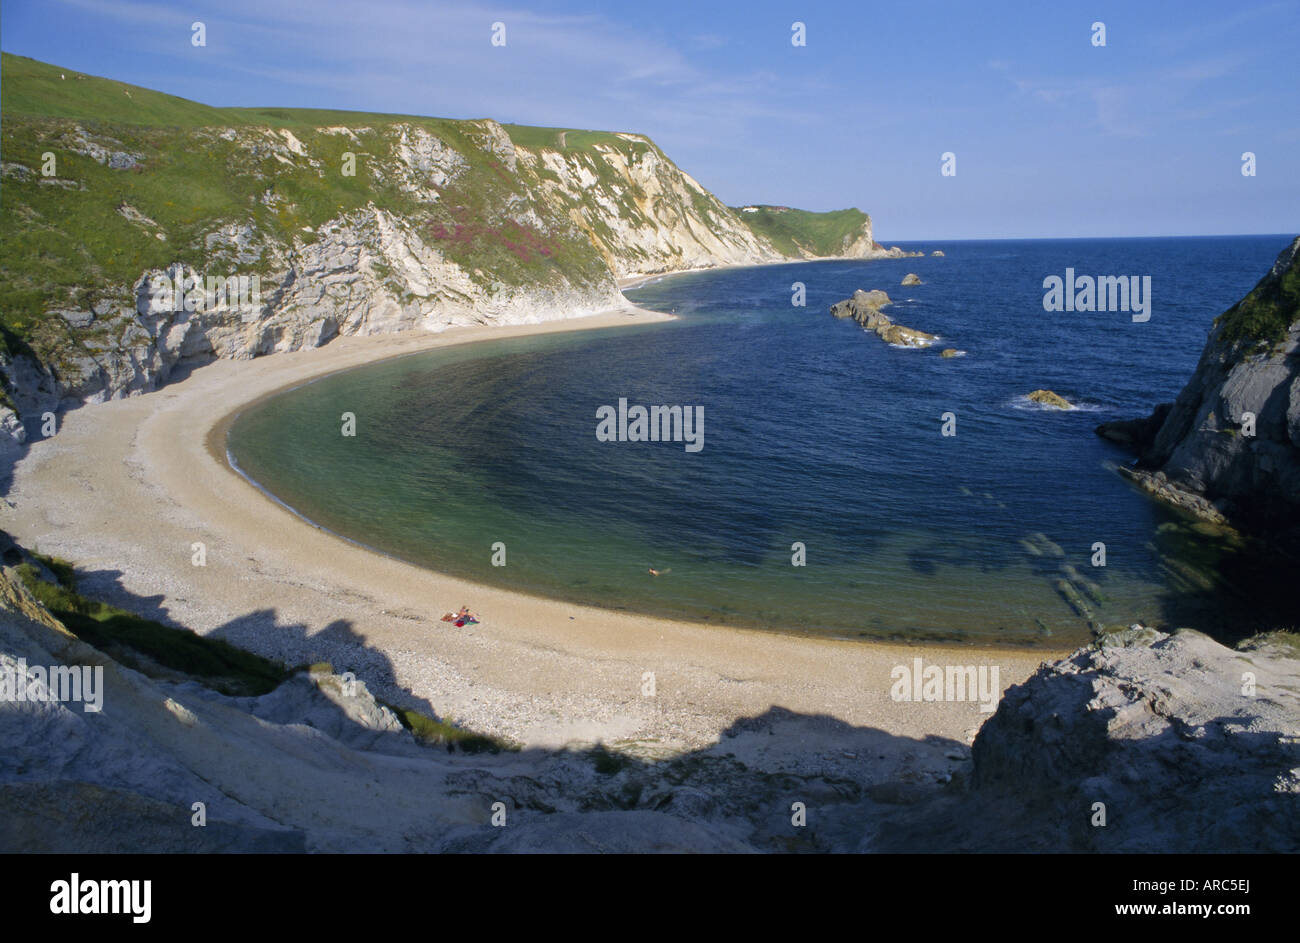 Mann O'War Bucht, zwischen Lulworth Cove and Durdle Door, Dorset, England, Vereinigtes Königreich, Europa Stockfoto